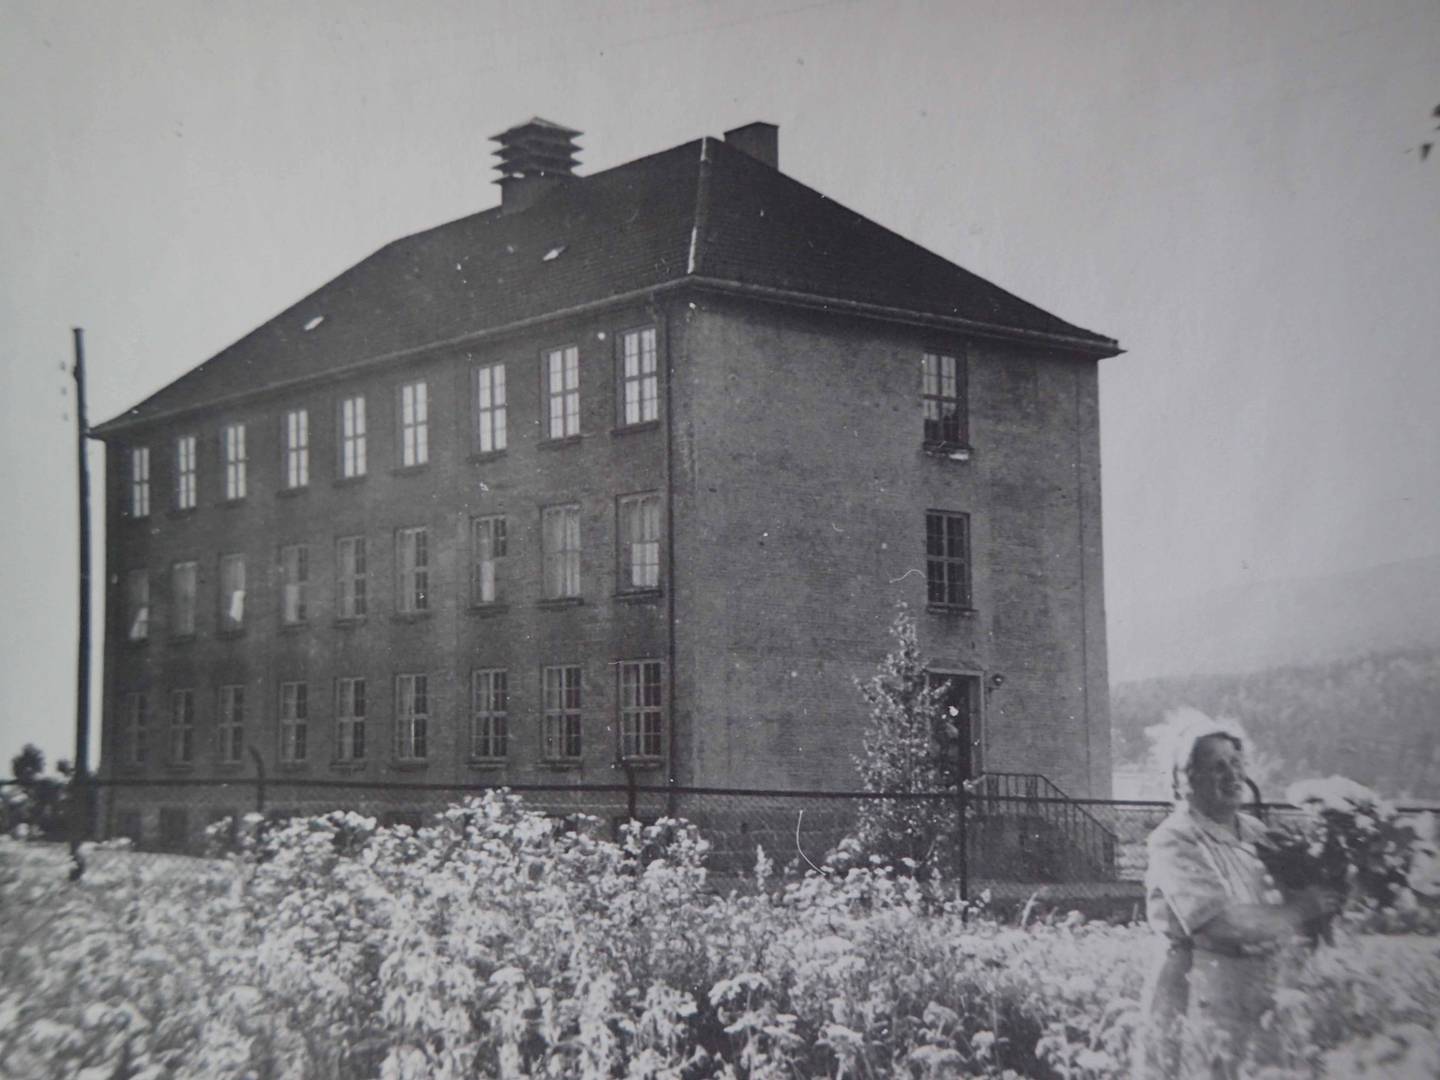 Åssiden skole har blitt gjenoppbygd etter brannen under 2. verdenskrig og har fått en ekstra etasje. De karakteristiske sidefløyene kom først i 1957. Utlånt fra Tor Adler Knudsens fotosamling. 19.05.21.-126